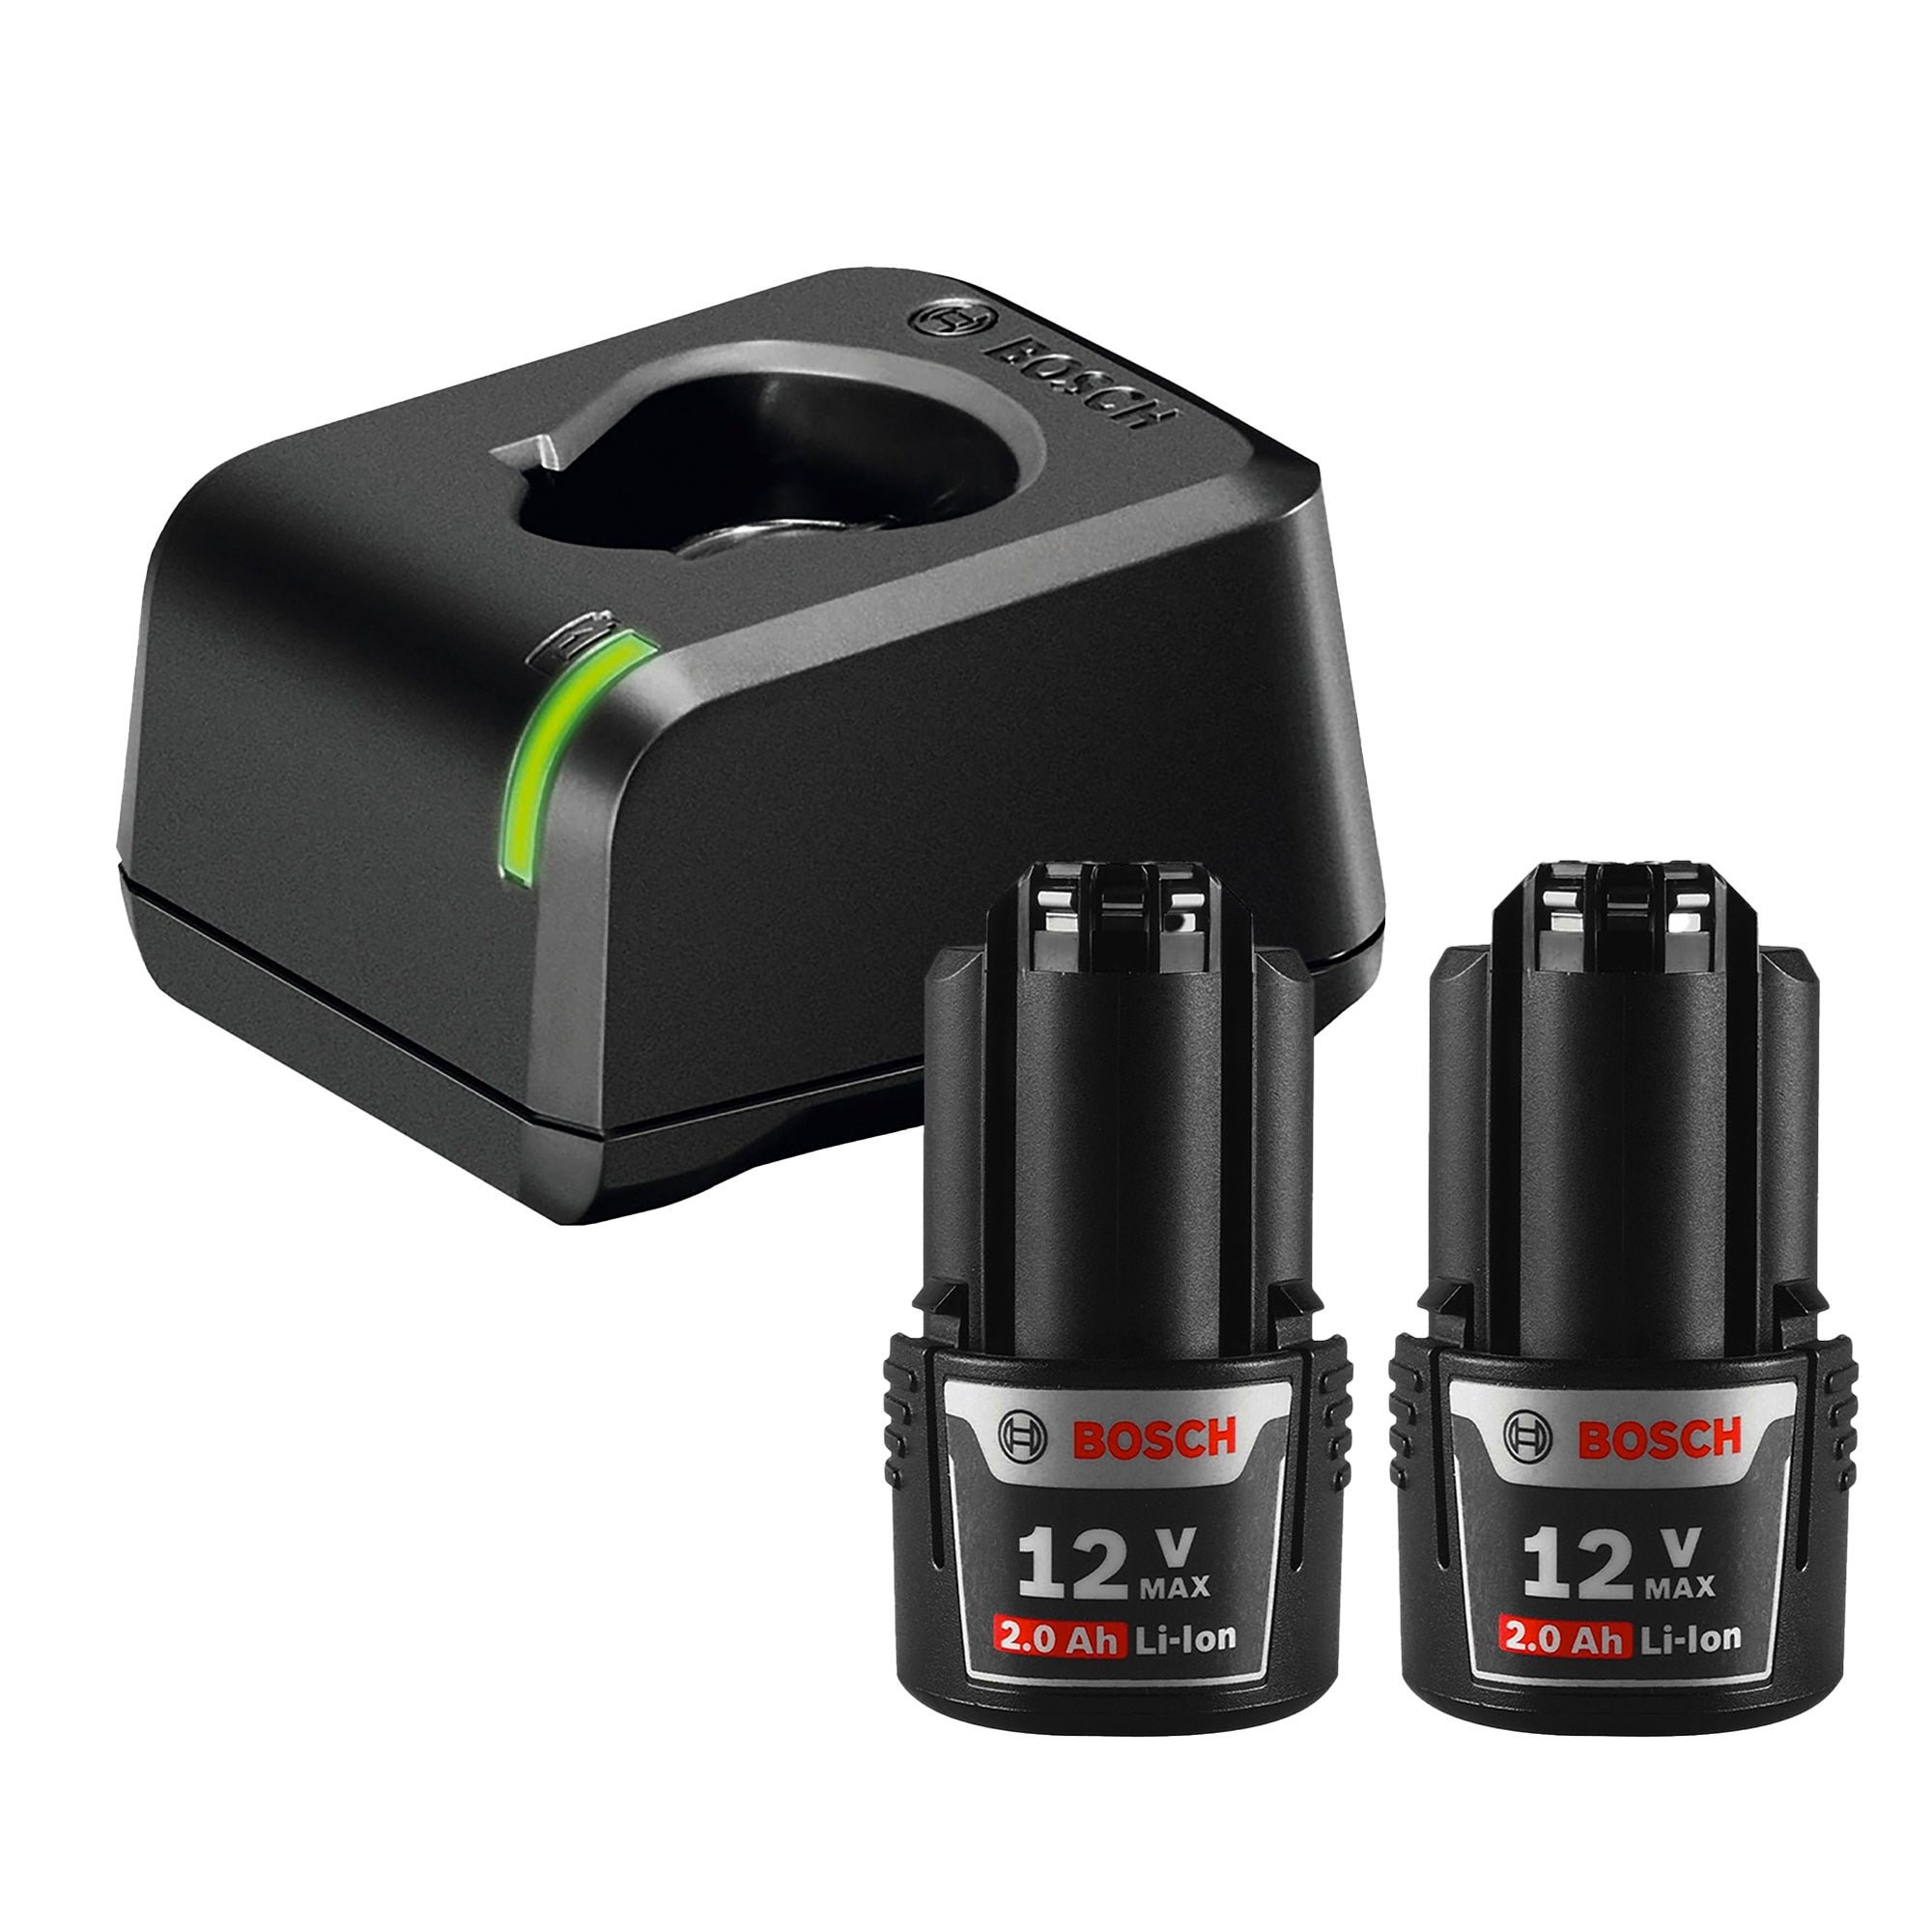 tubo imponer Y Cargador de batería GAL 12V-20 y 2 Baterías Bosch 12V 2,0Ah – FERREKUPER